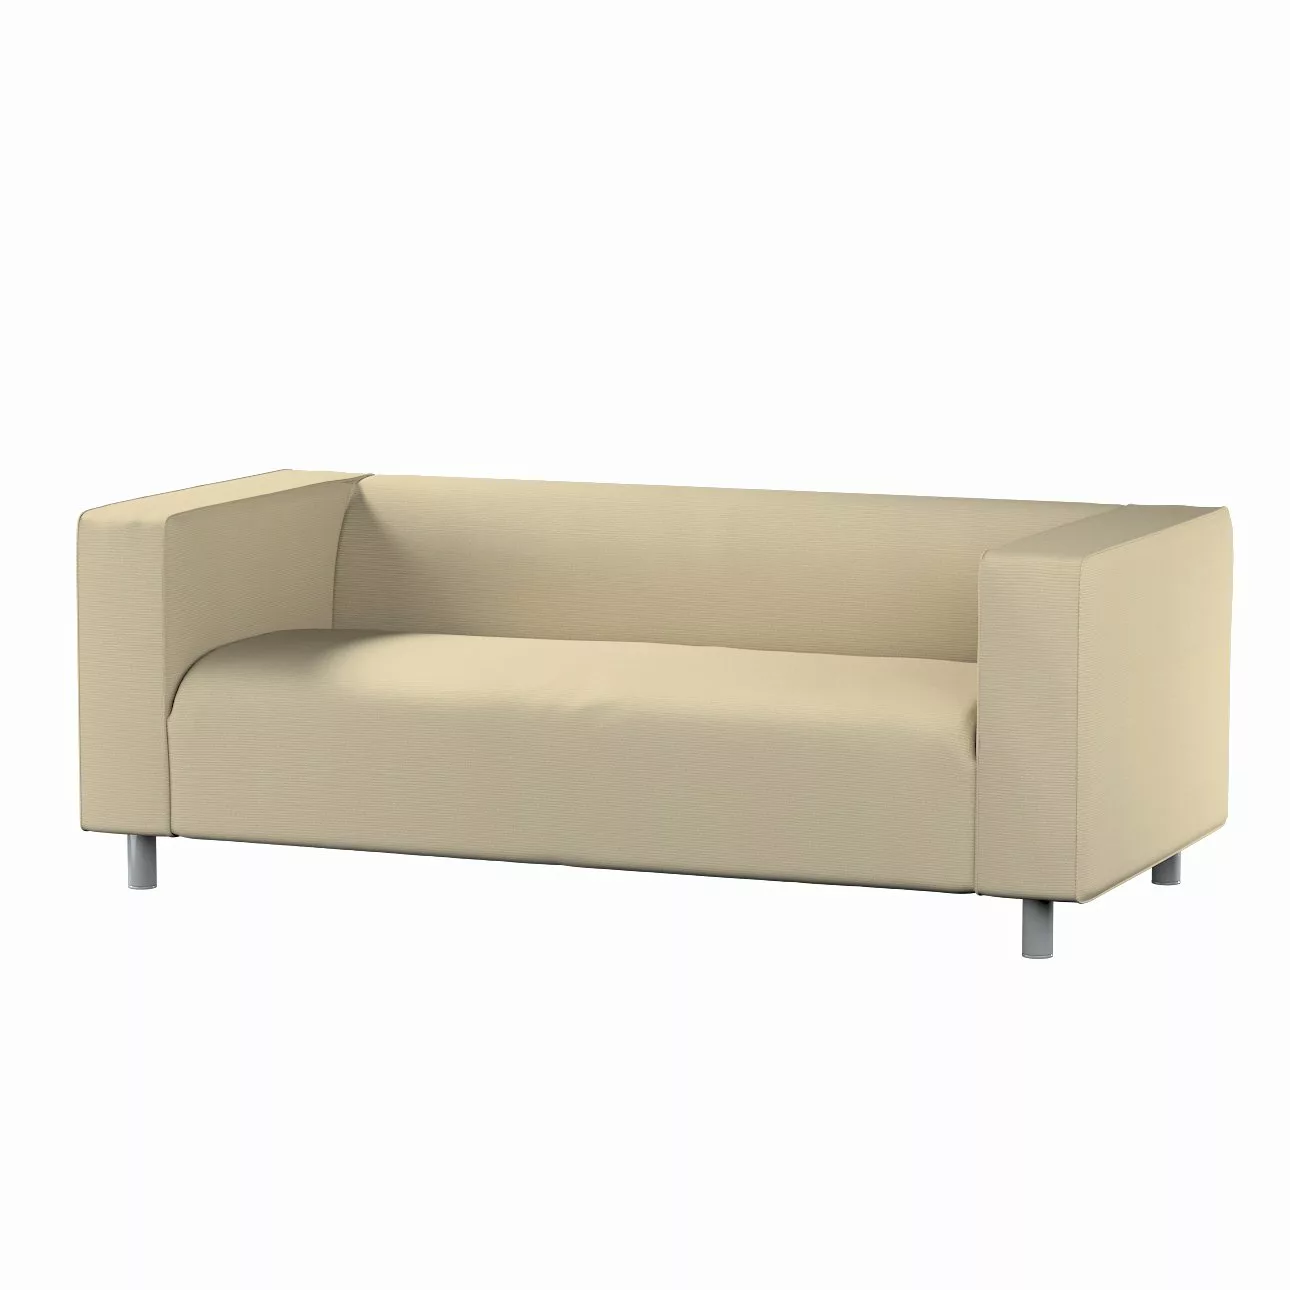 Bezug für Klippan 2-Sitzer Sofa, beige, Sofahusse, Klippan 2-Sitzer, Manche günstig online kaufen